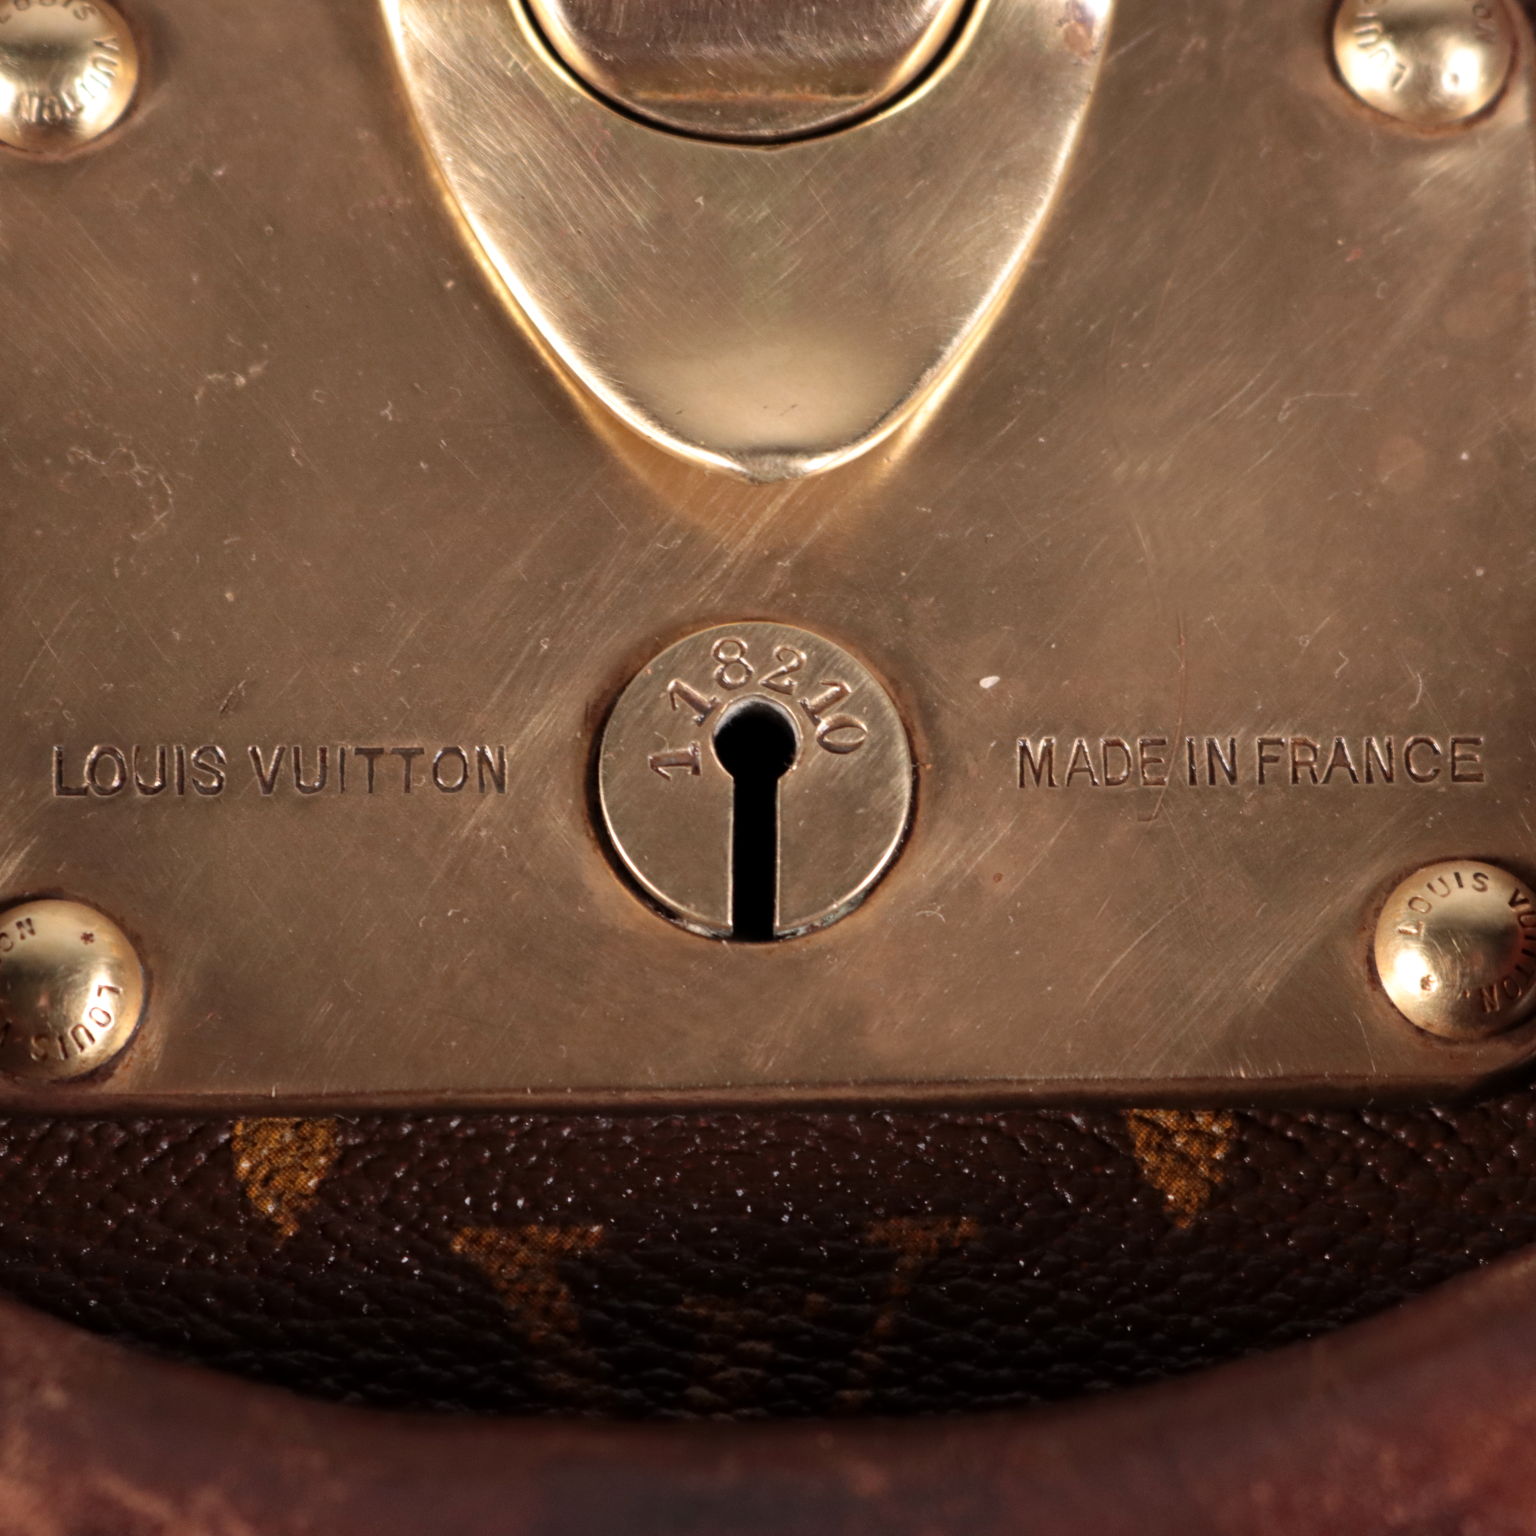 Valigia Louis Vuitton Valise Bisten 60 in tela monogram e losine